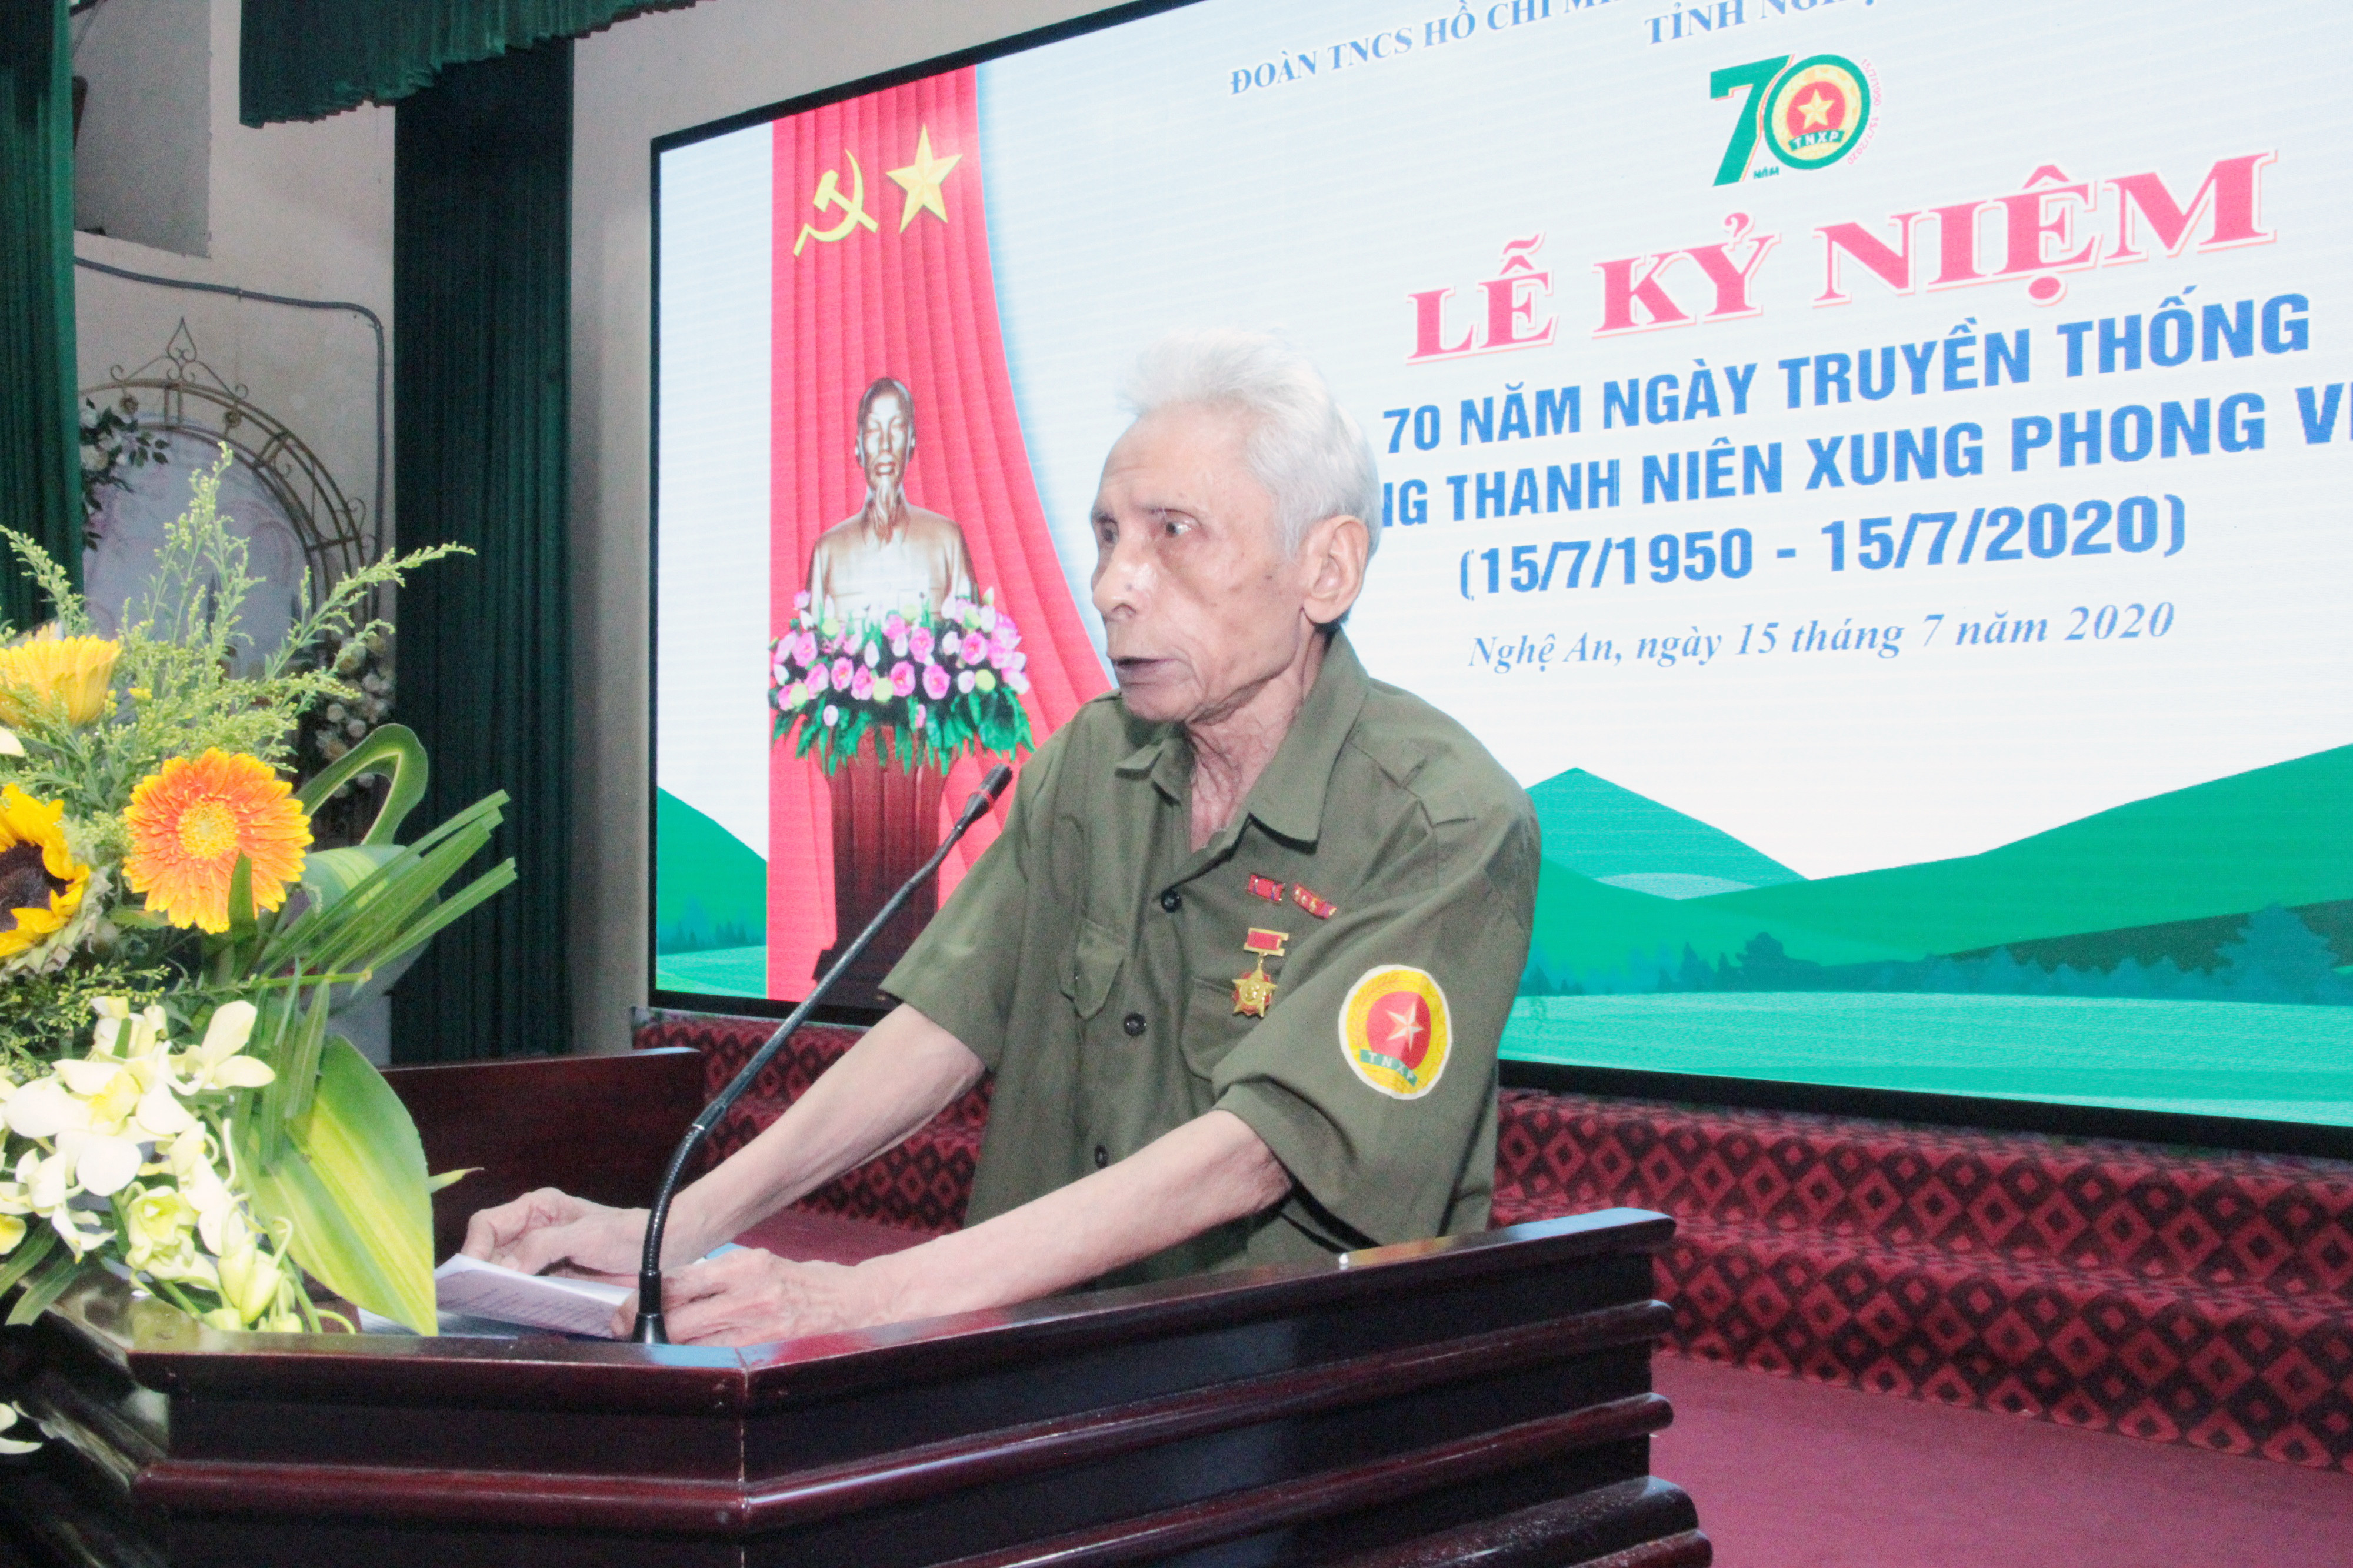 Chủ tịch Hội Cựu chiến binh Mai Ất phát biểu tại chương trình. Ảnh: Thanh Quỳnh